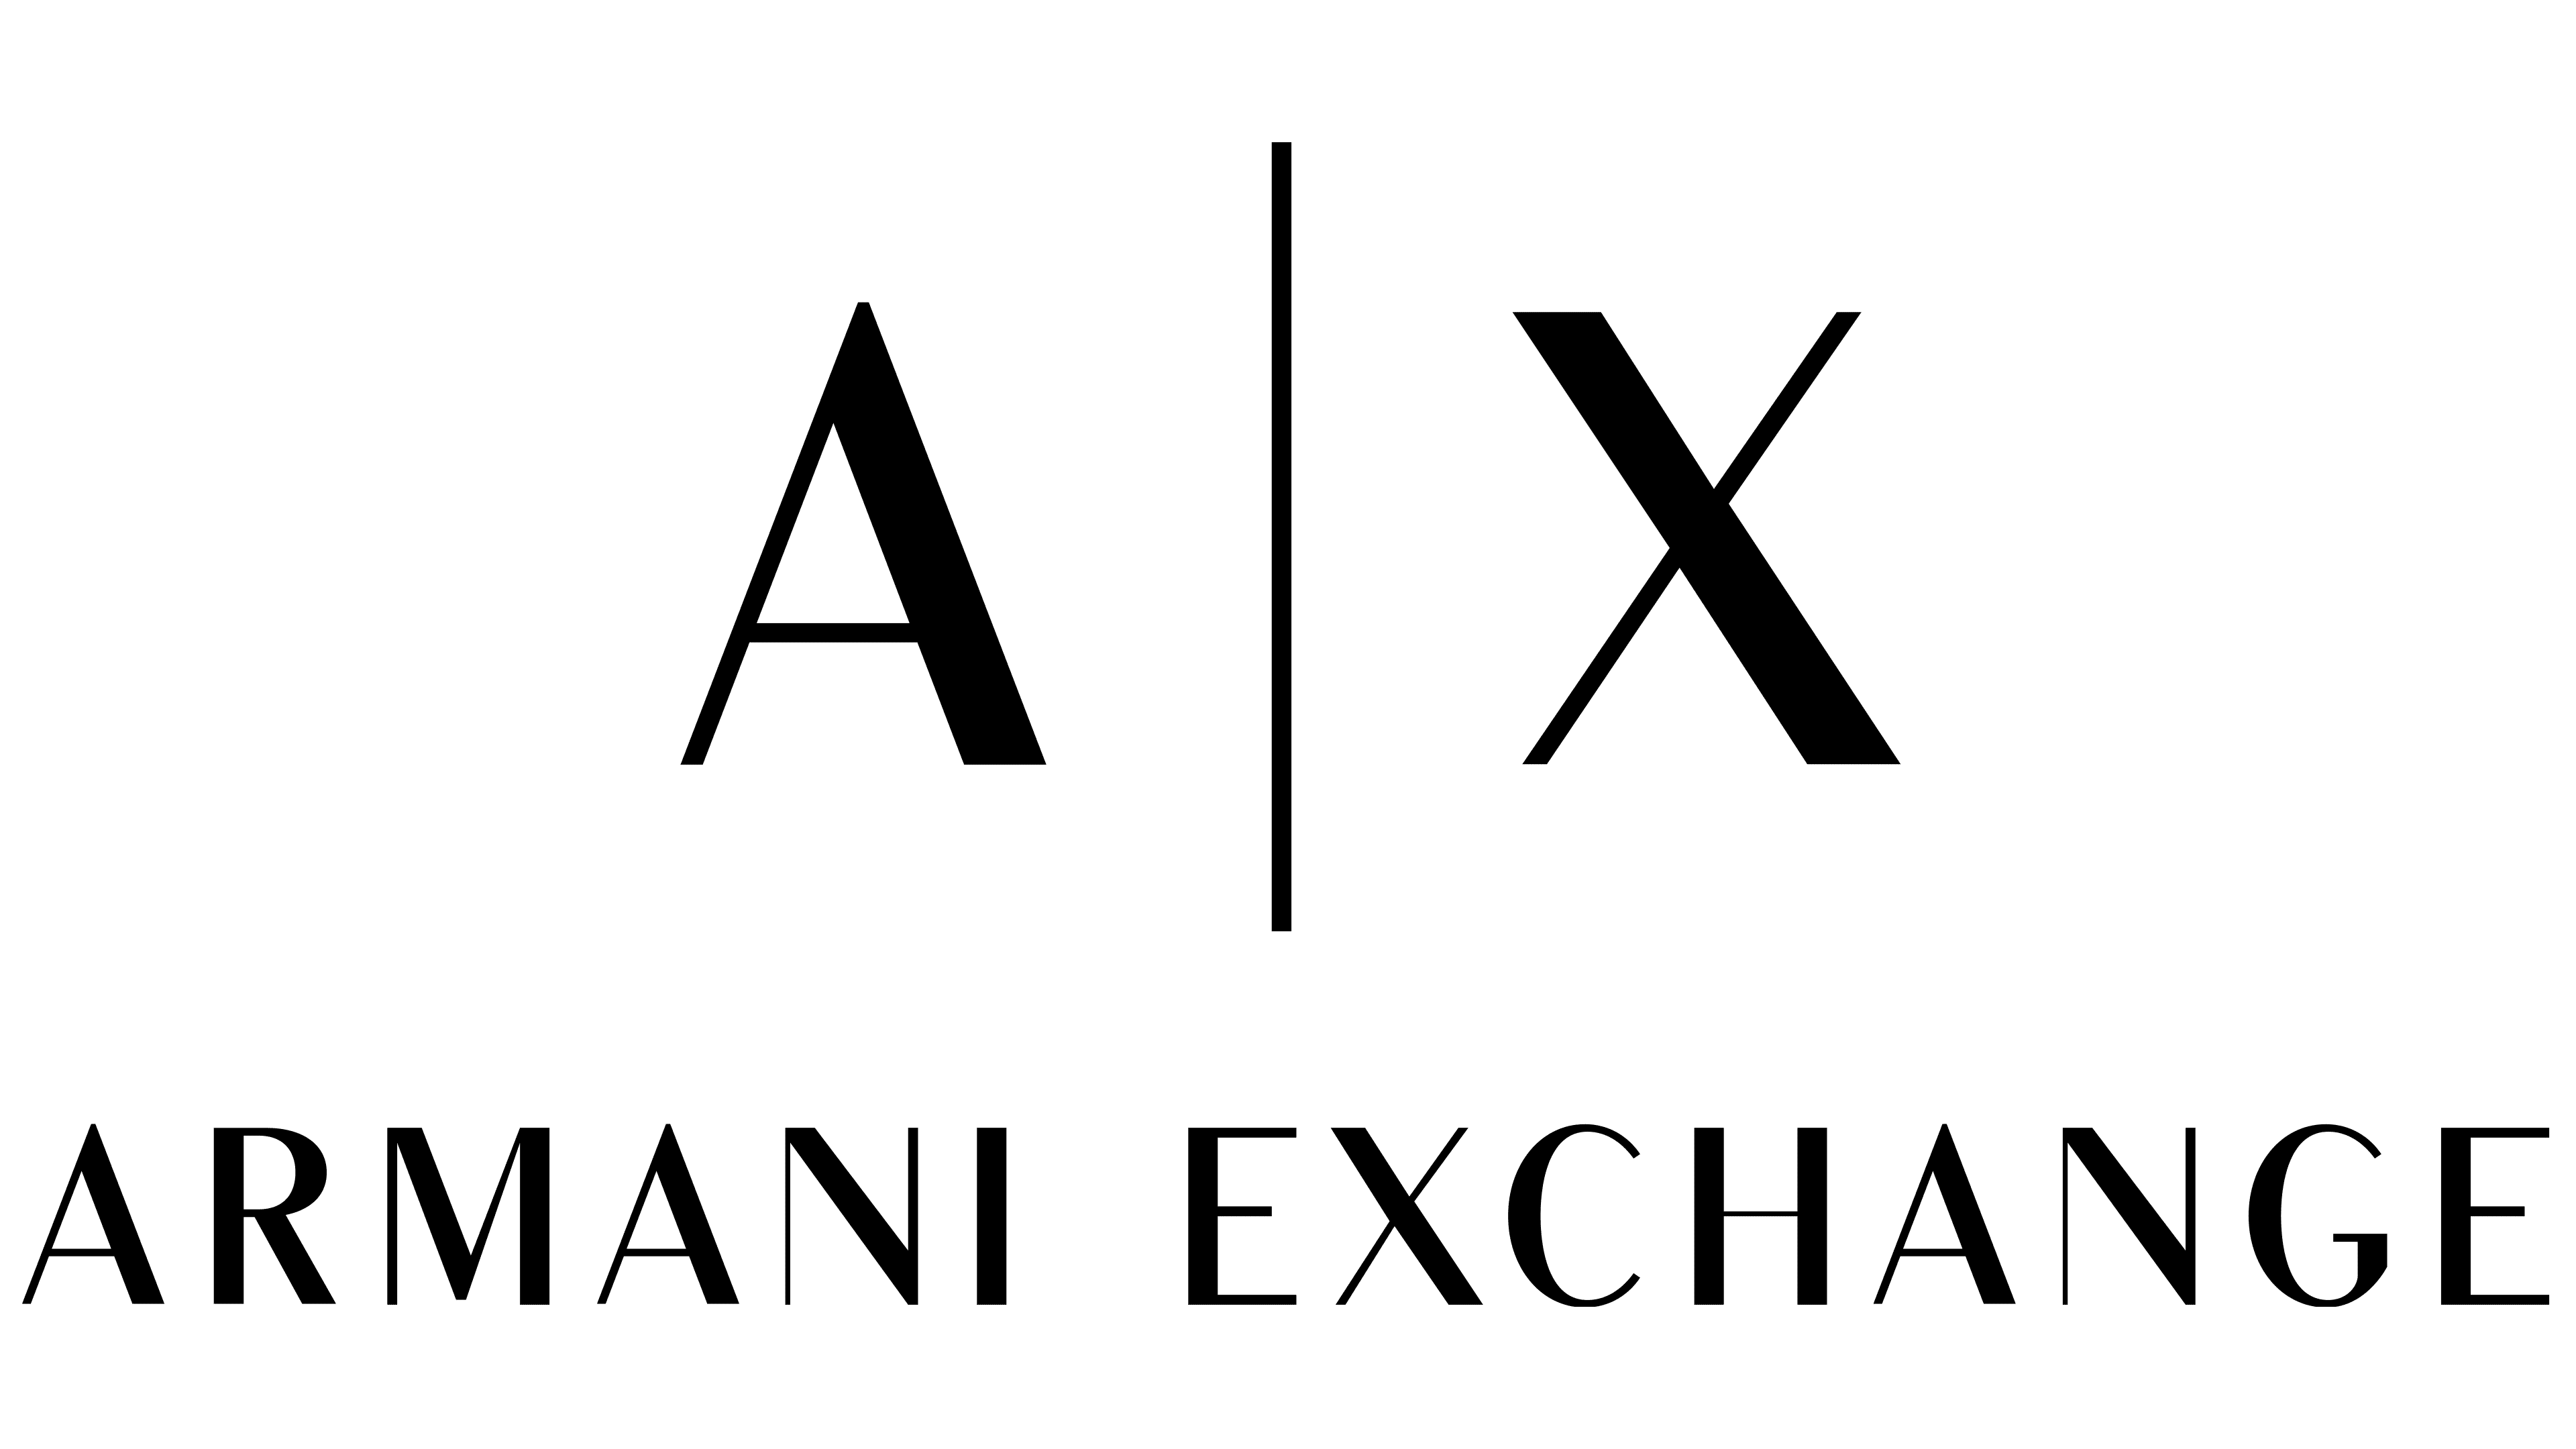 https://1000logos.net/wp-content/uploads/2022/07/Armani-Exchange-logo.png